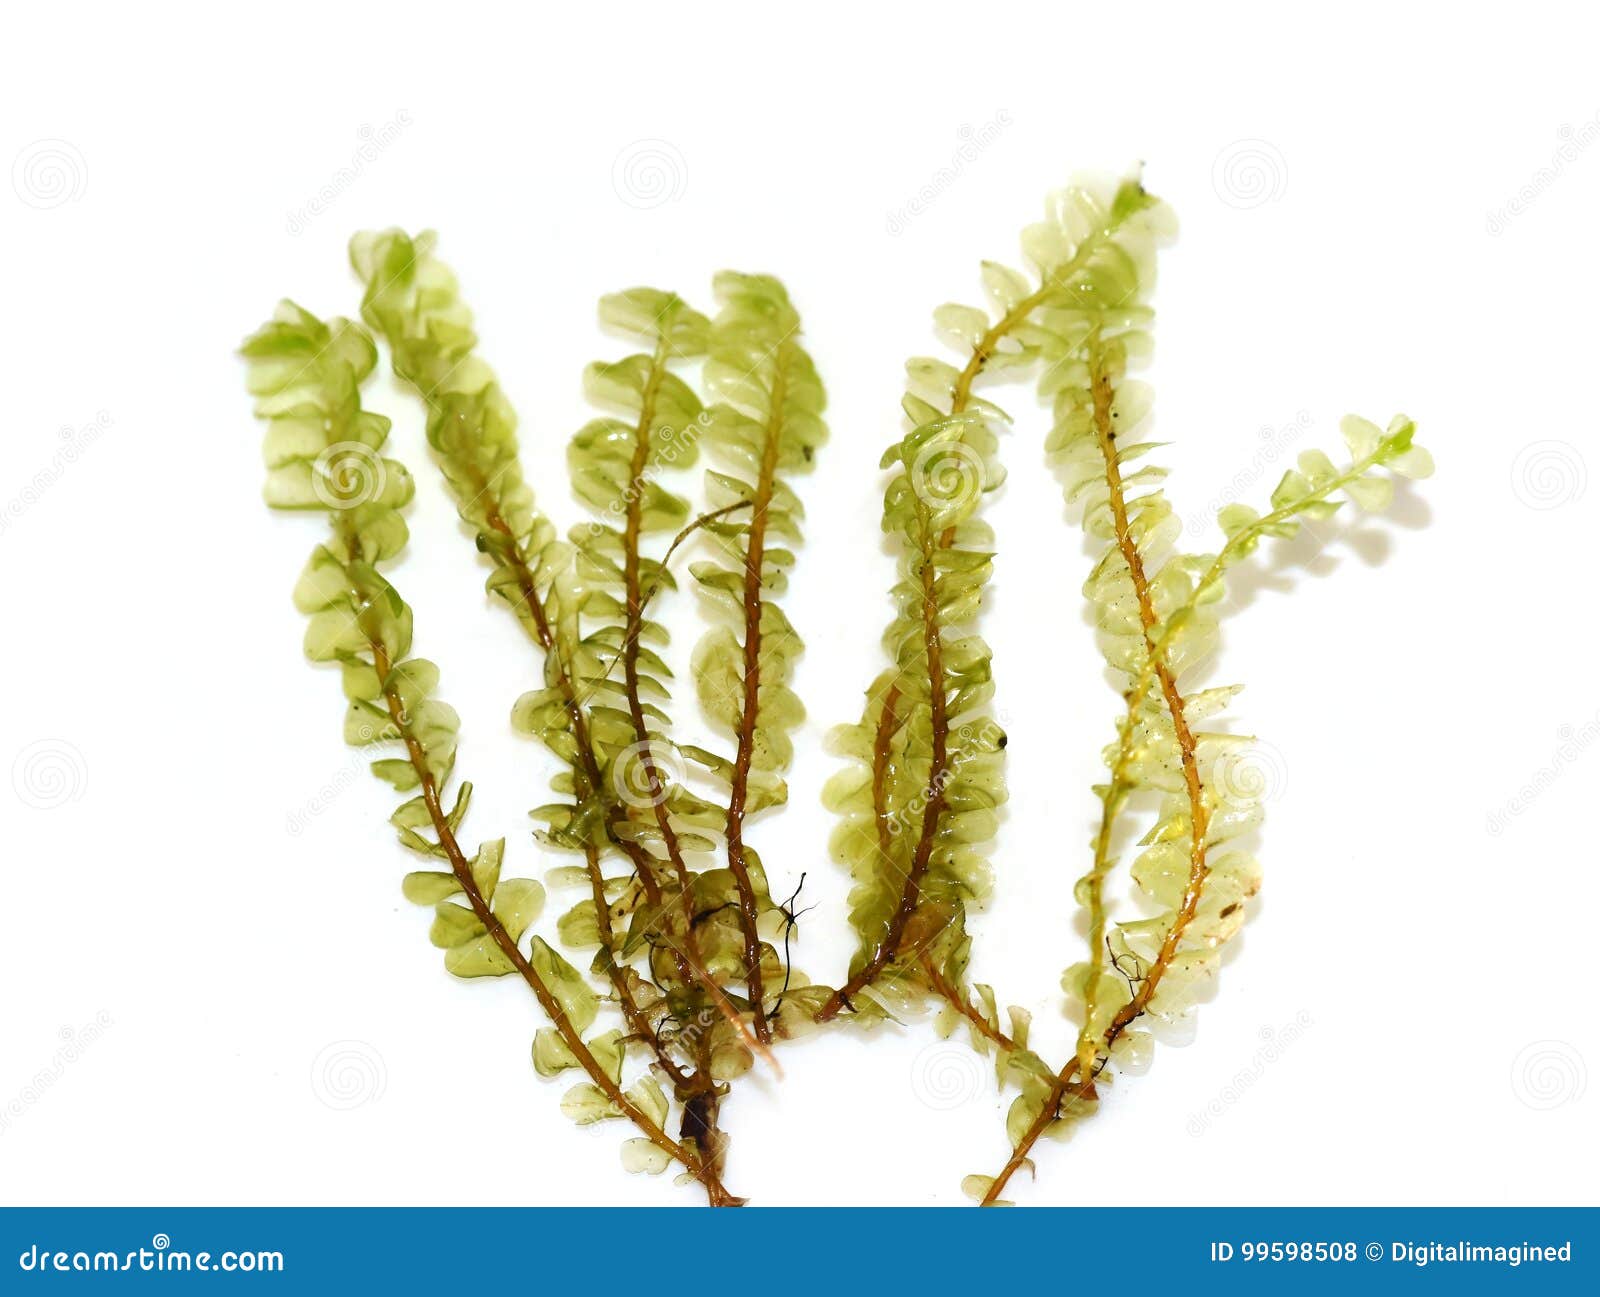 liverwort moss